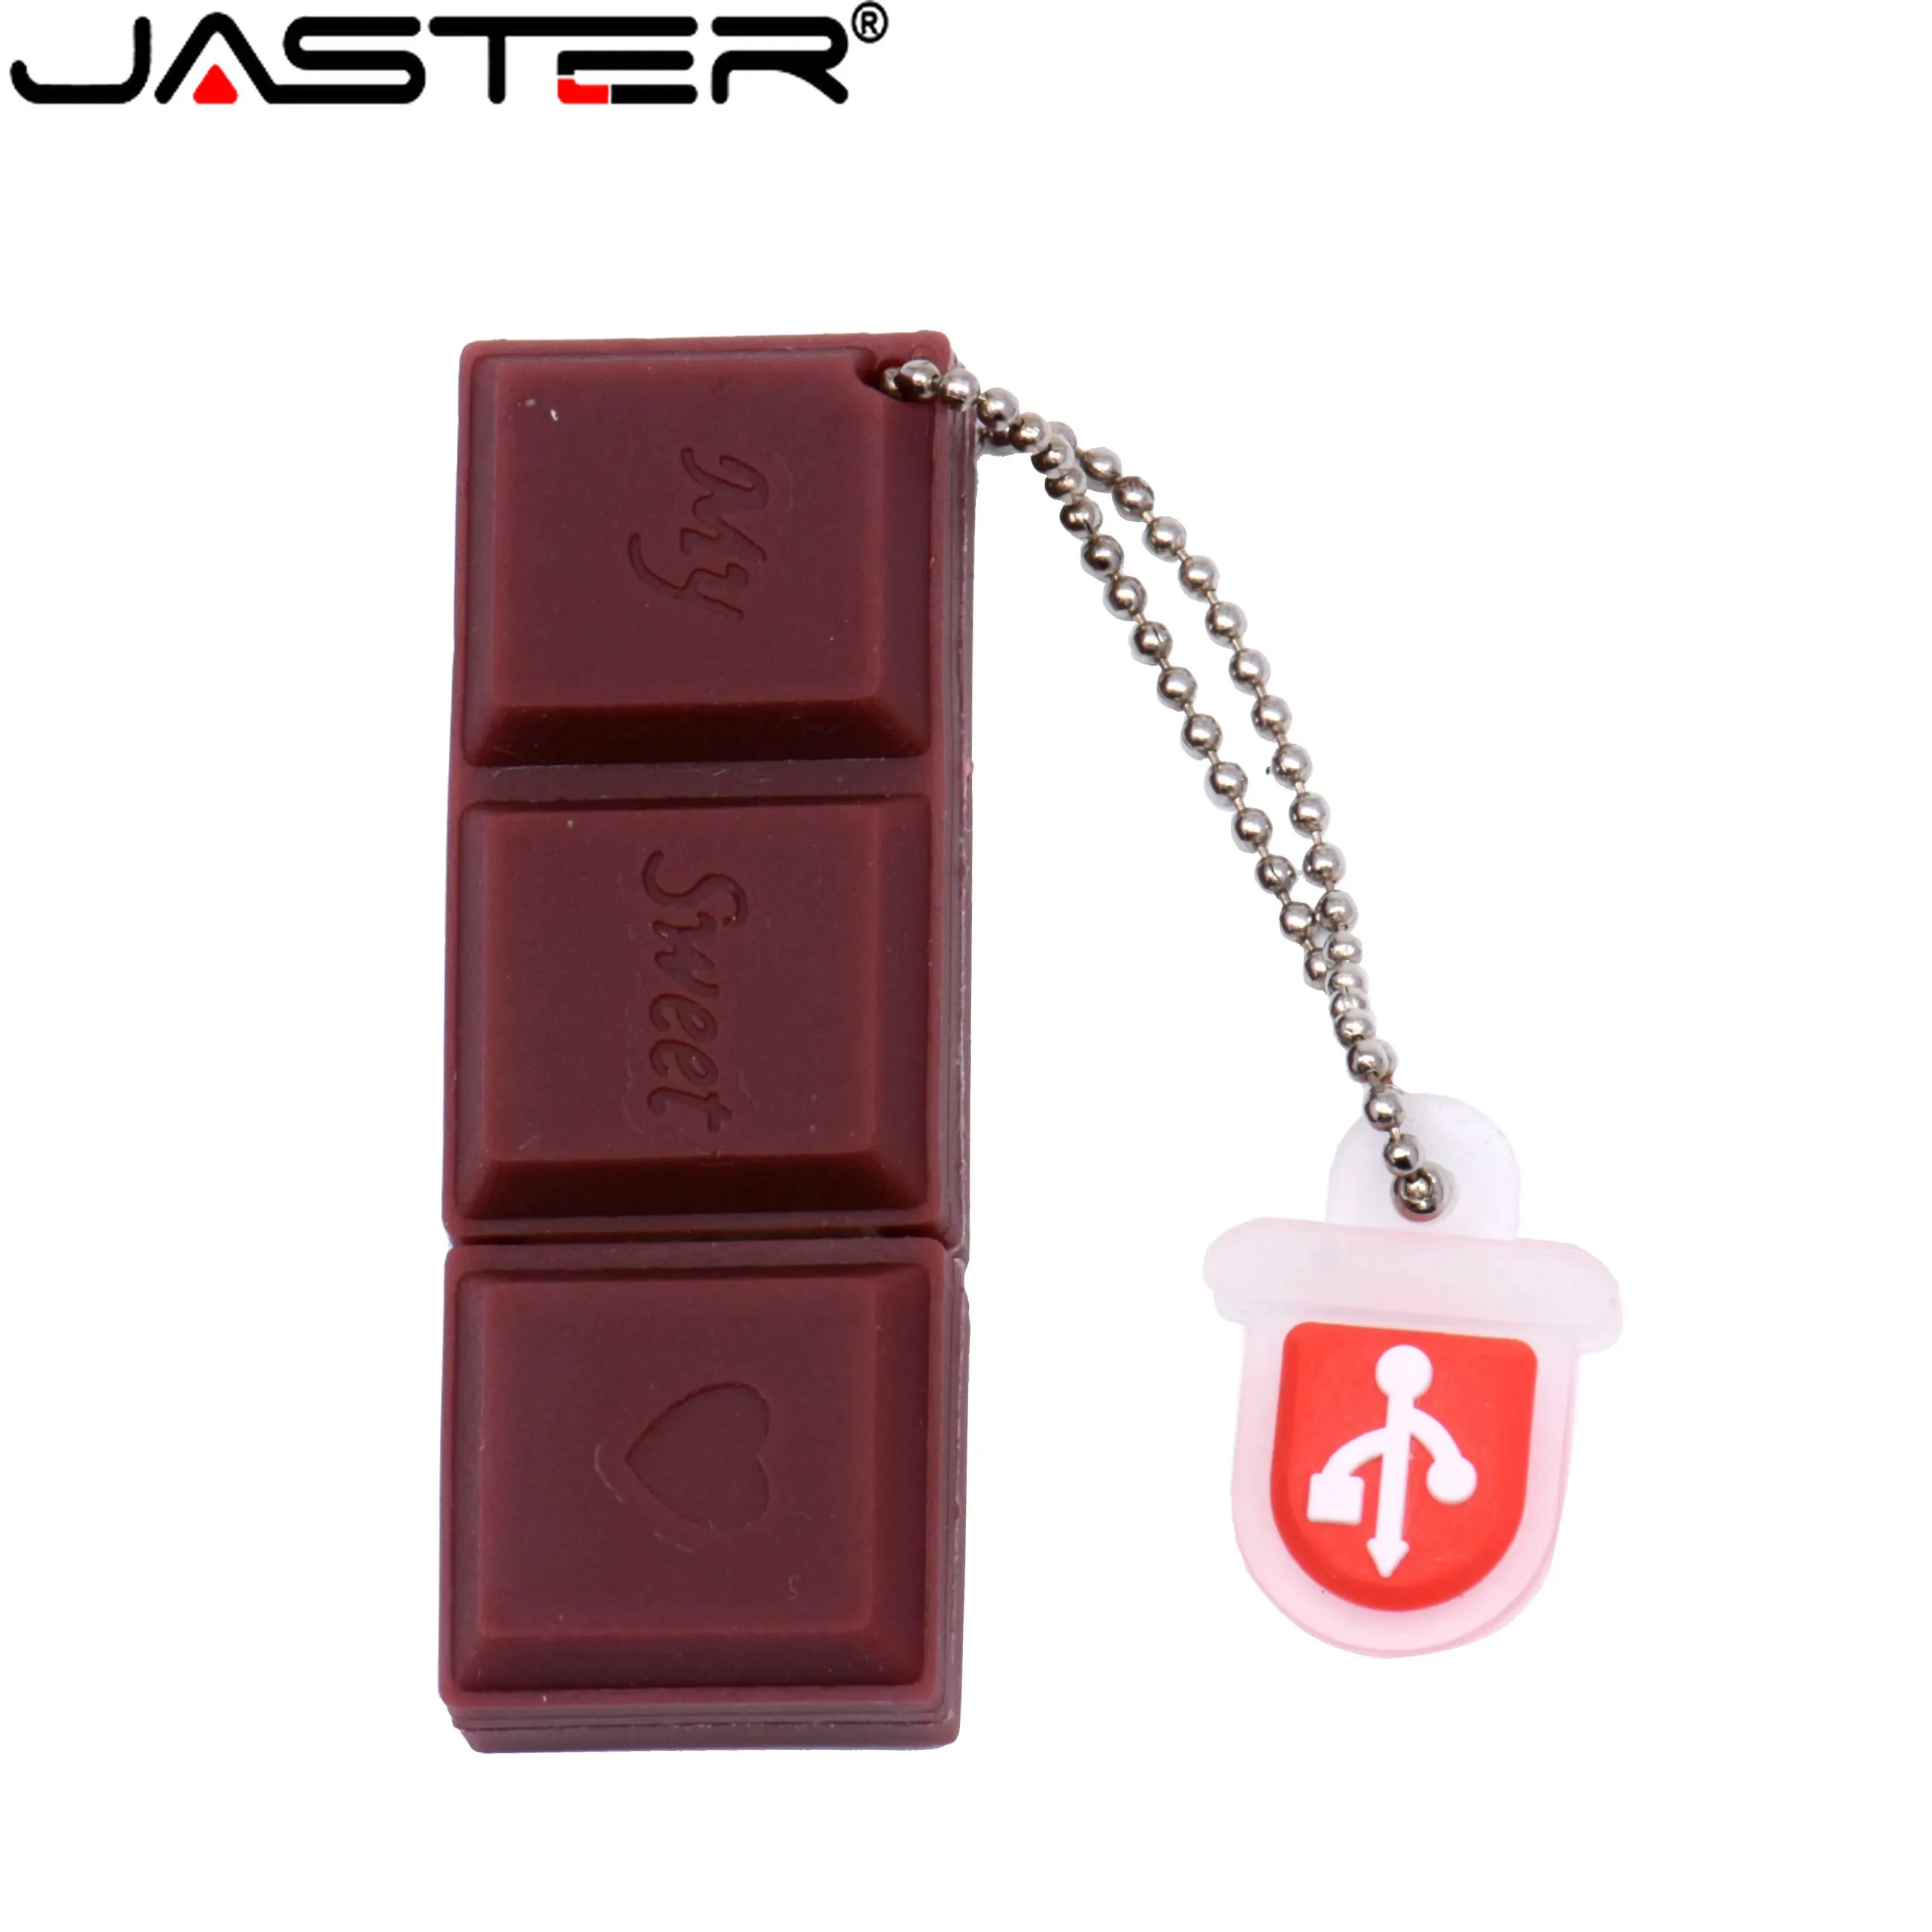 JASTER-unidad Flash USB de fruta, memoria de 64GB, bolígrafo con diseño de verdura, 32GB, helado de Chocolate, zanahoria, Chile, berenjena, caramelo